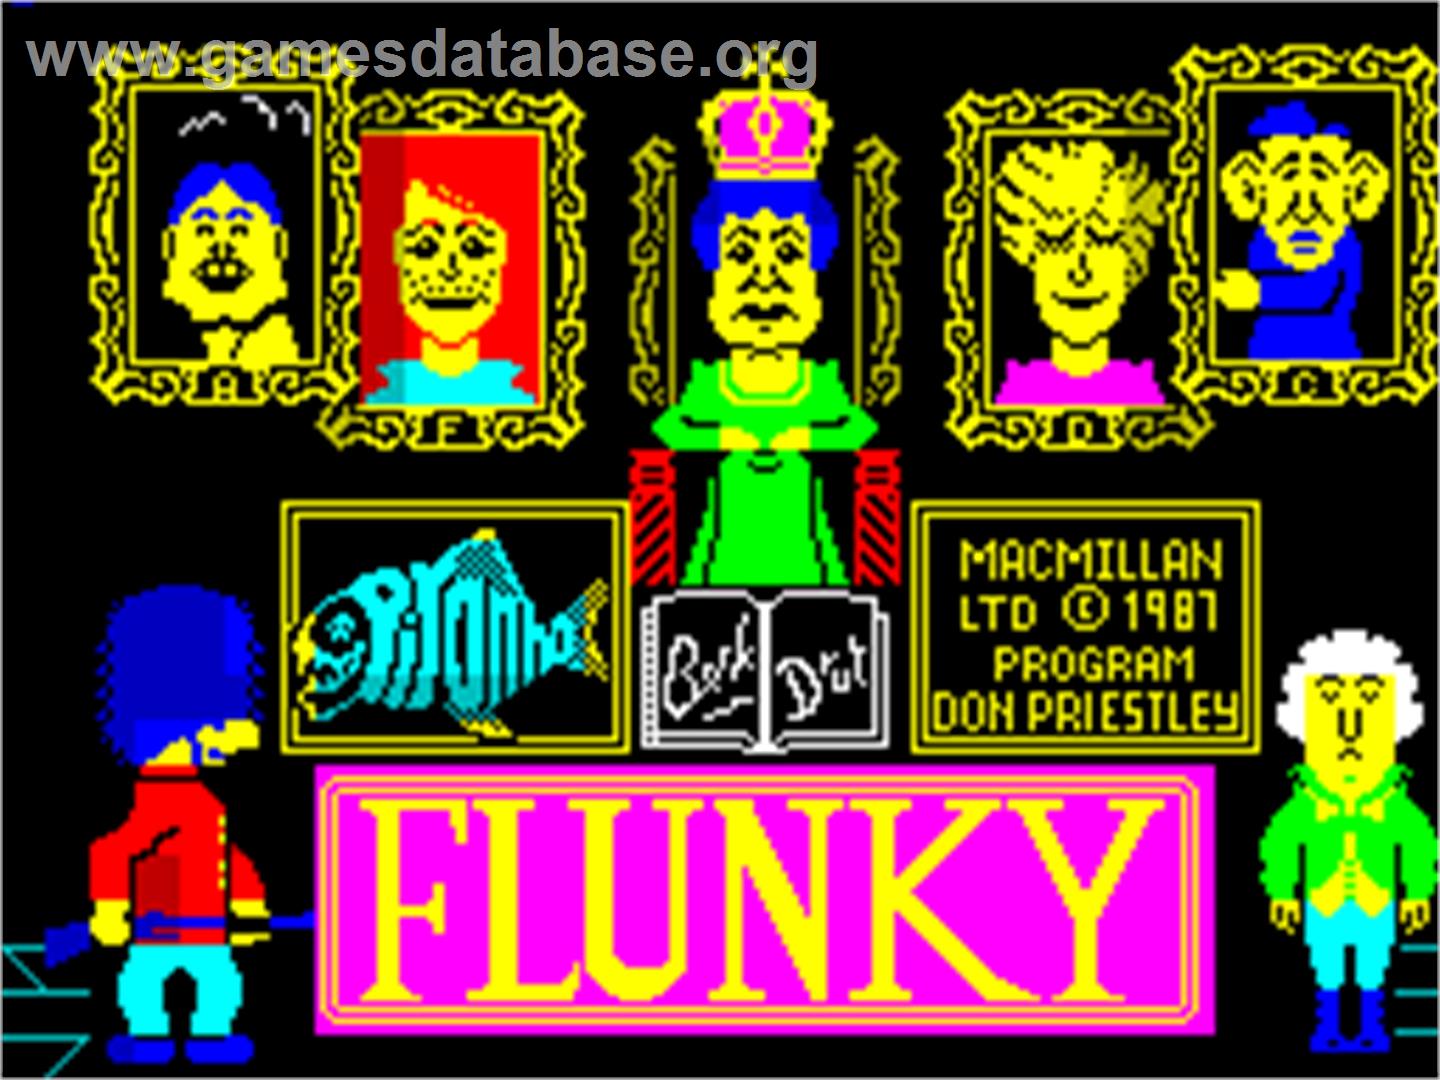 Flunky - Sinclair ZX Spectrum - Artwork - Title Screen